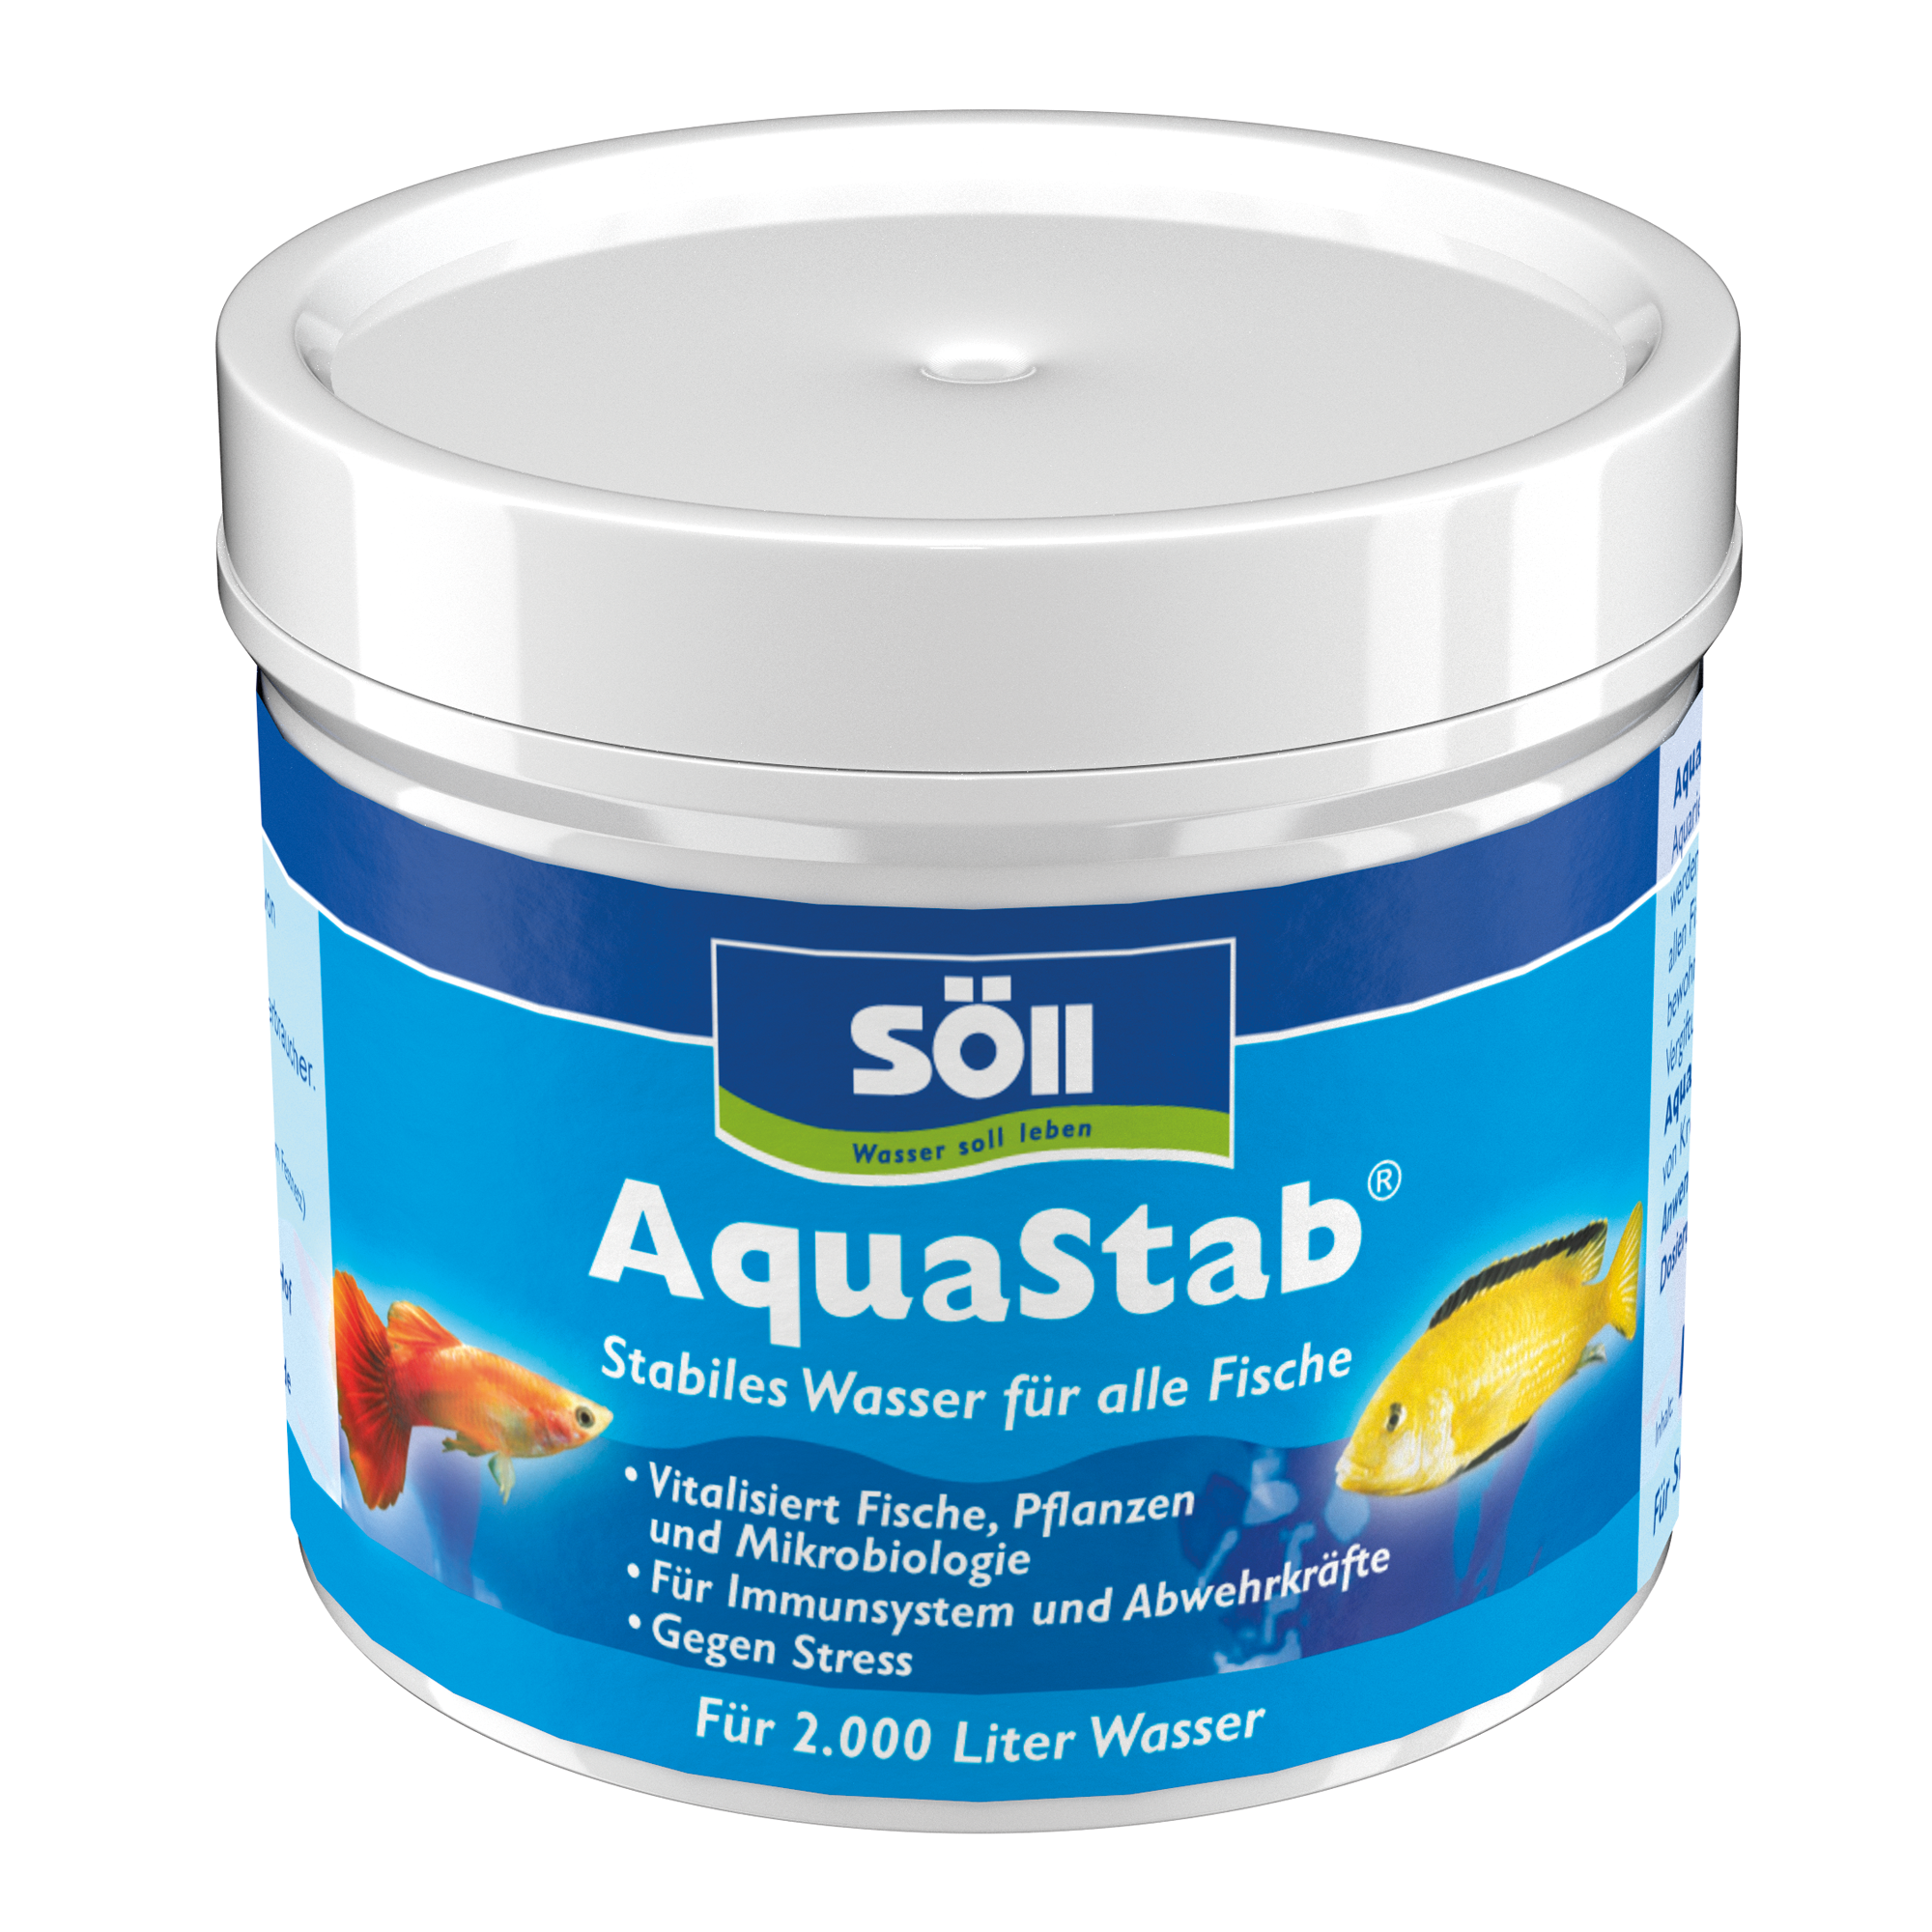 AquaStab 100 g + product picture